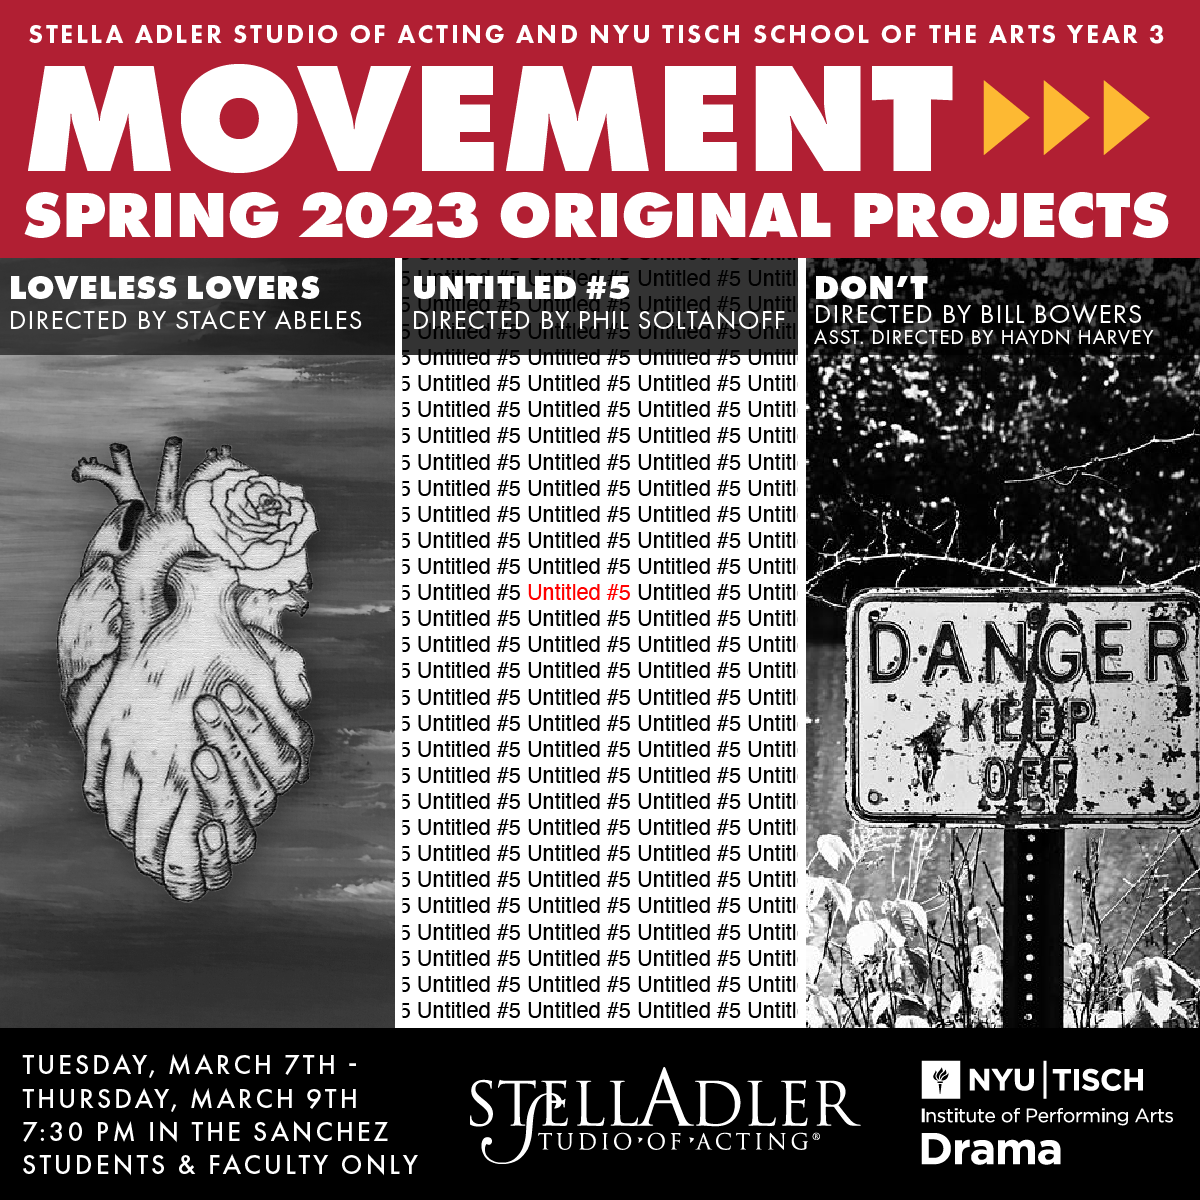 NYU3 Original Movement Projects